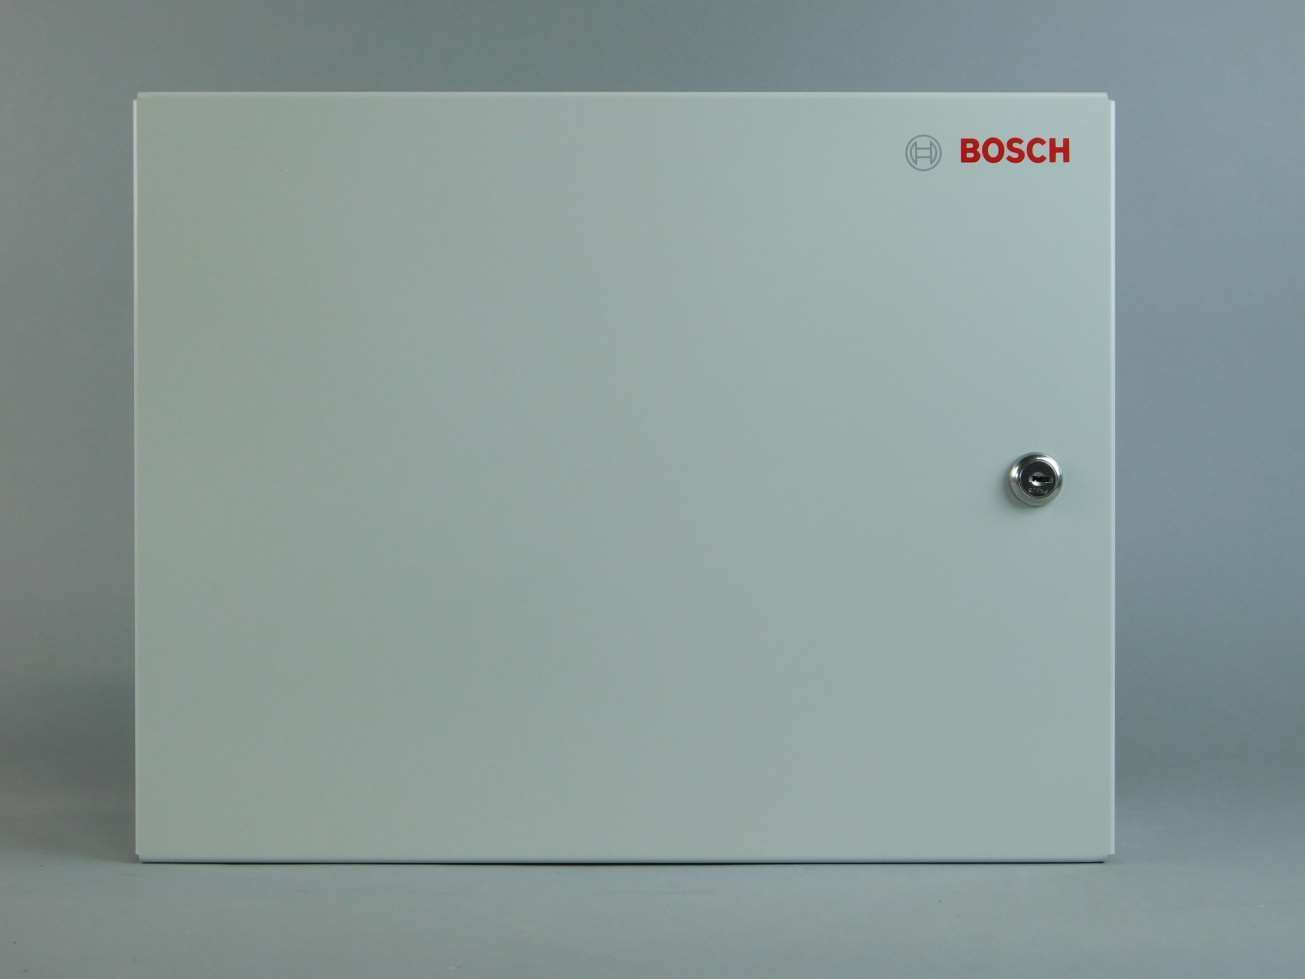 Bosch AMC2 Small Enclosure w/1 DIN Rail AEC-AMC2-UL1